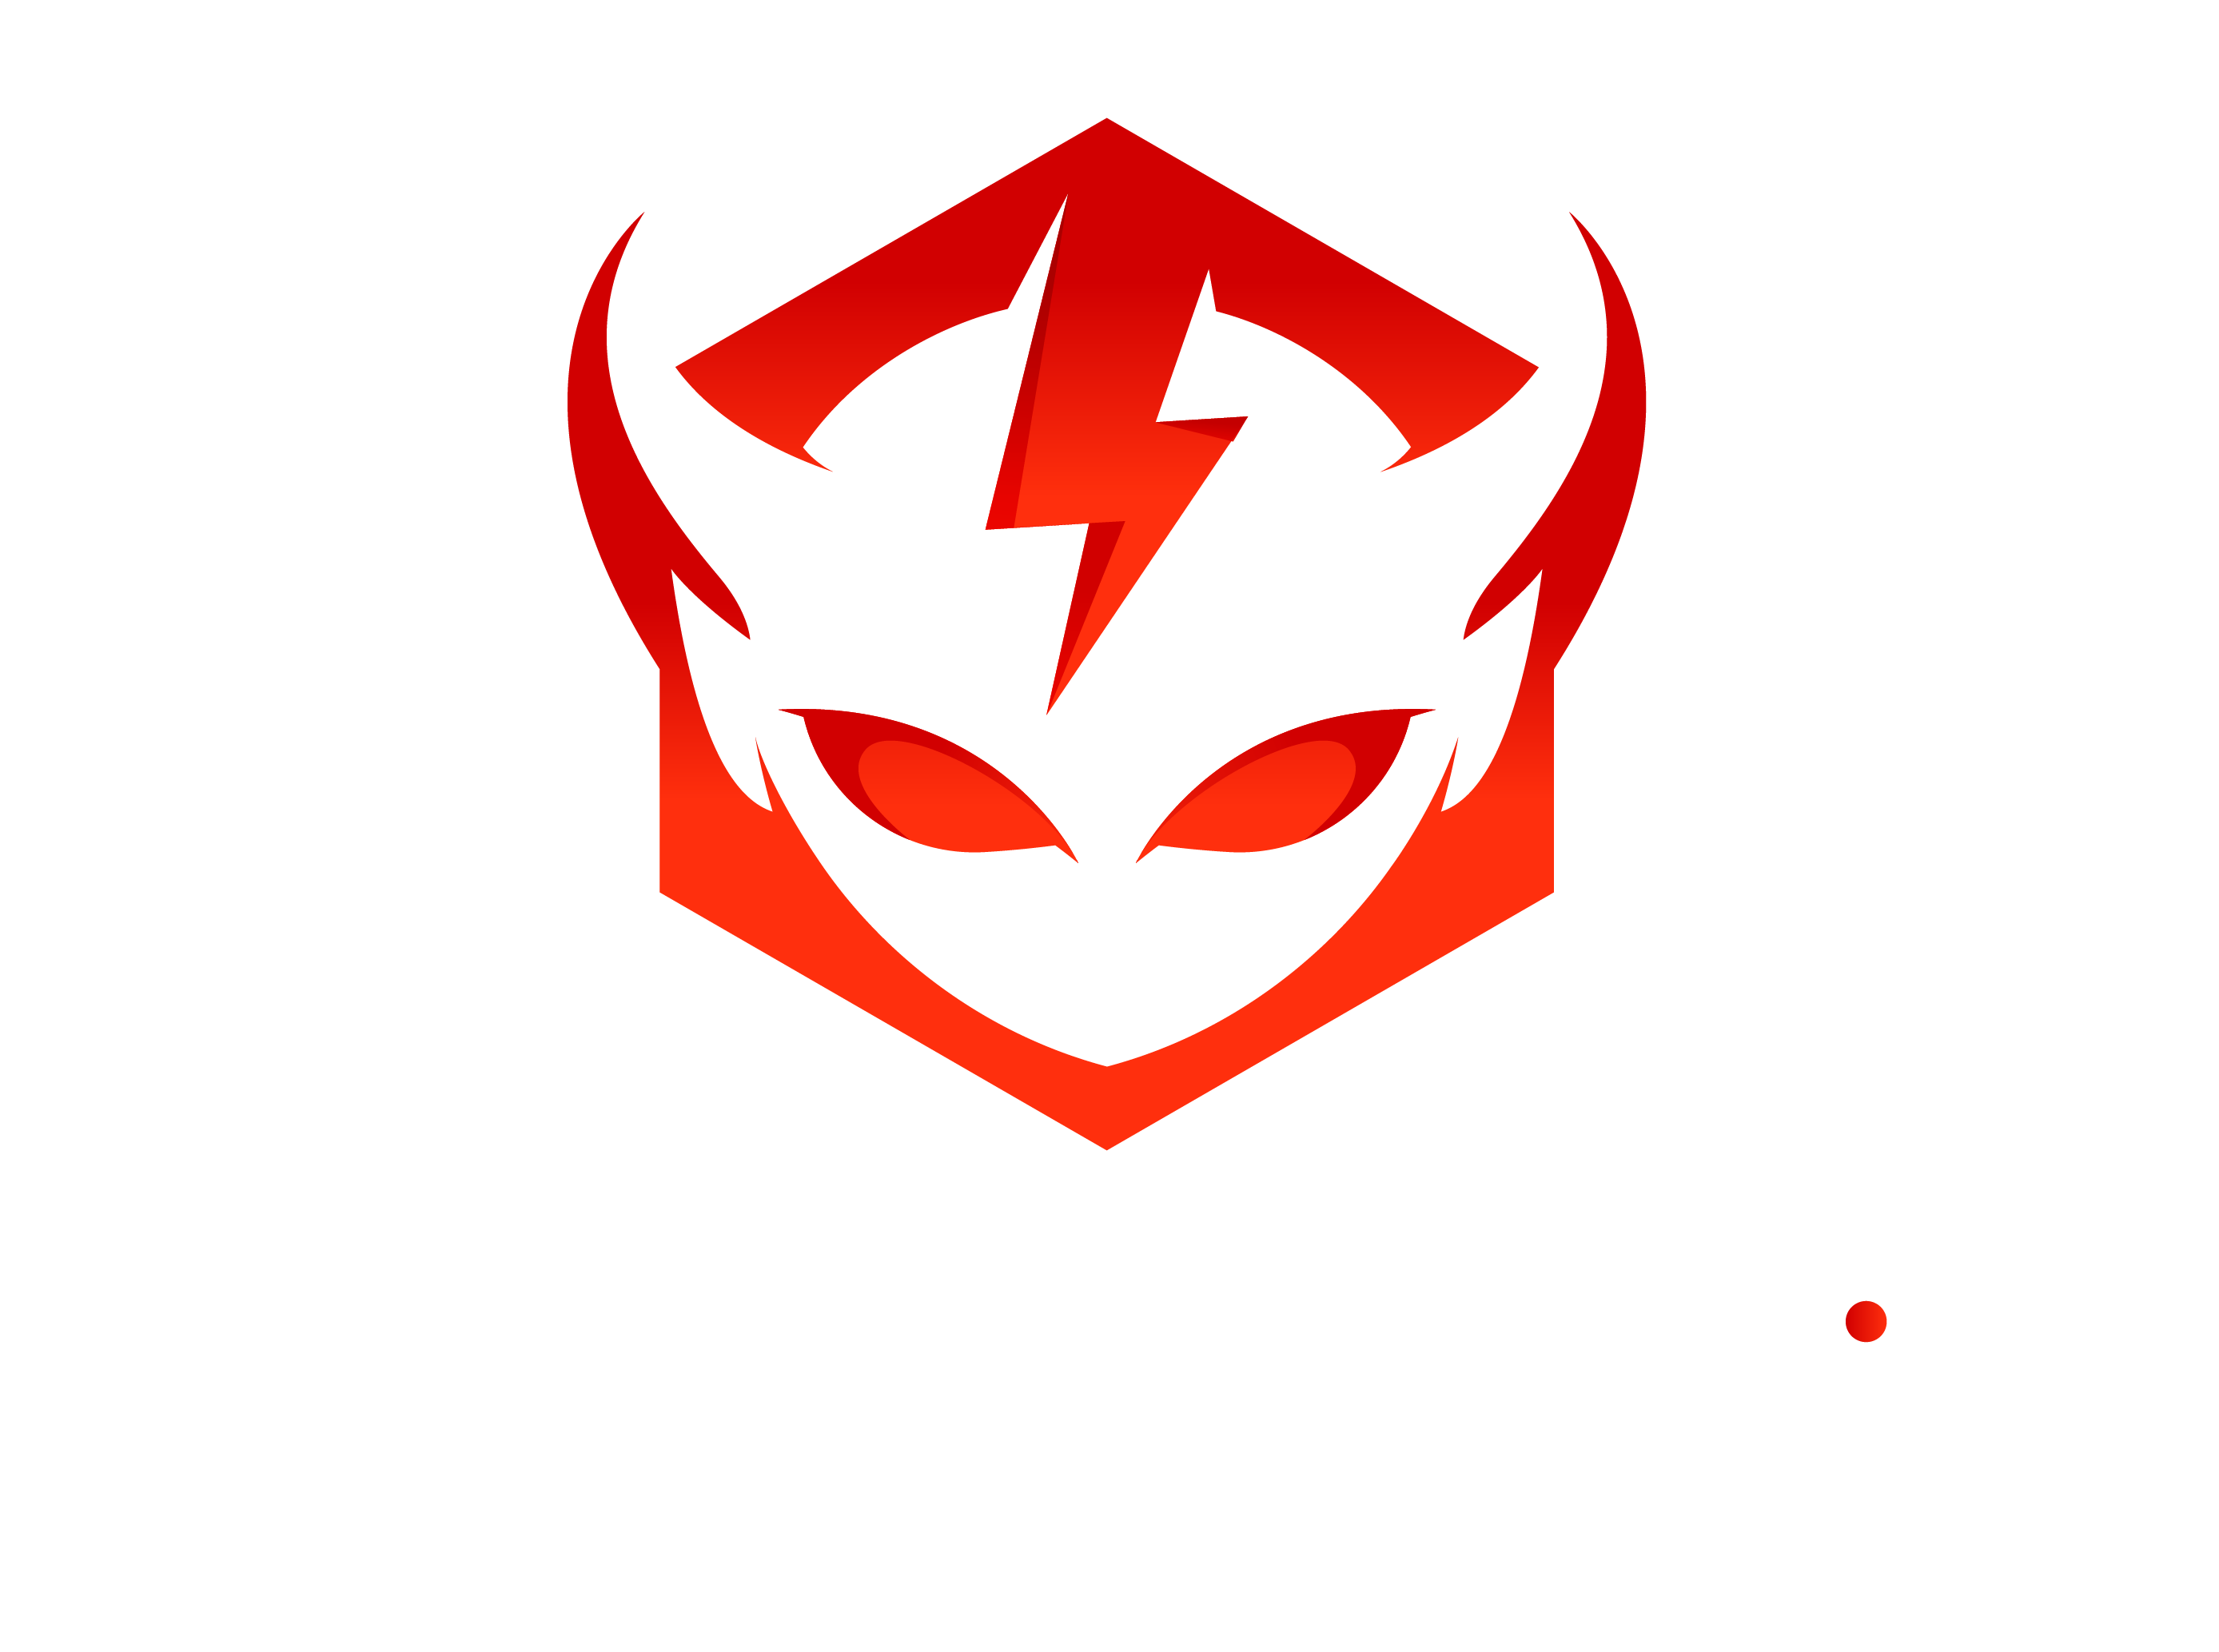 Daemonic